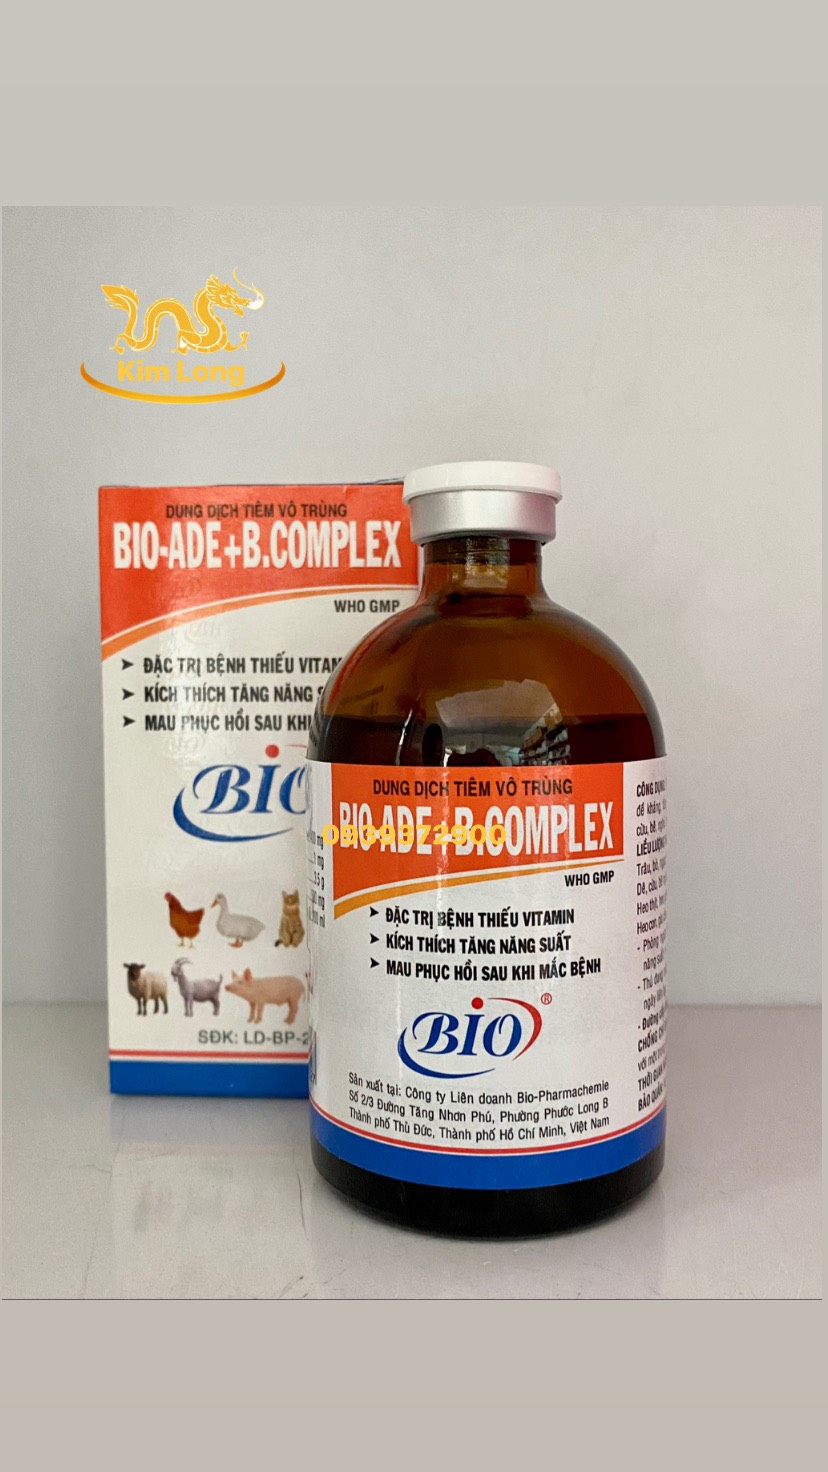 Bio - ADE Bcomplex chai 100ml - Trị bệnh thiếu vitamin